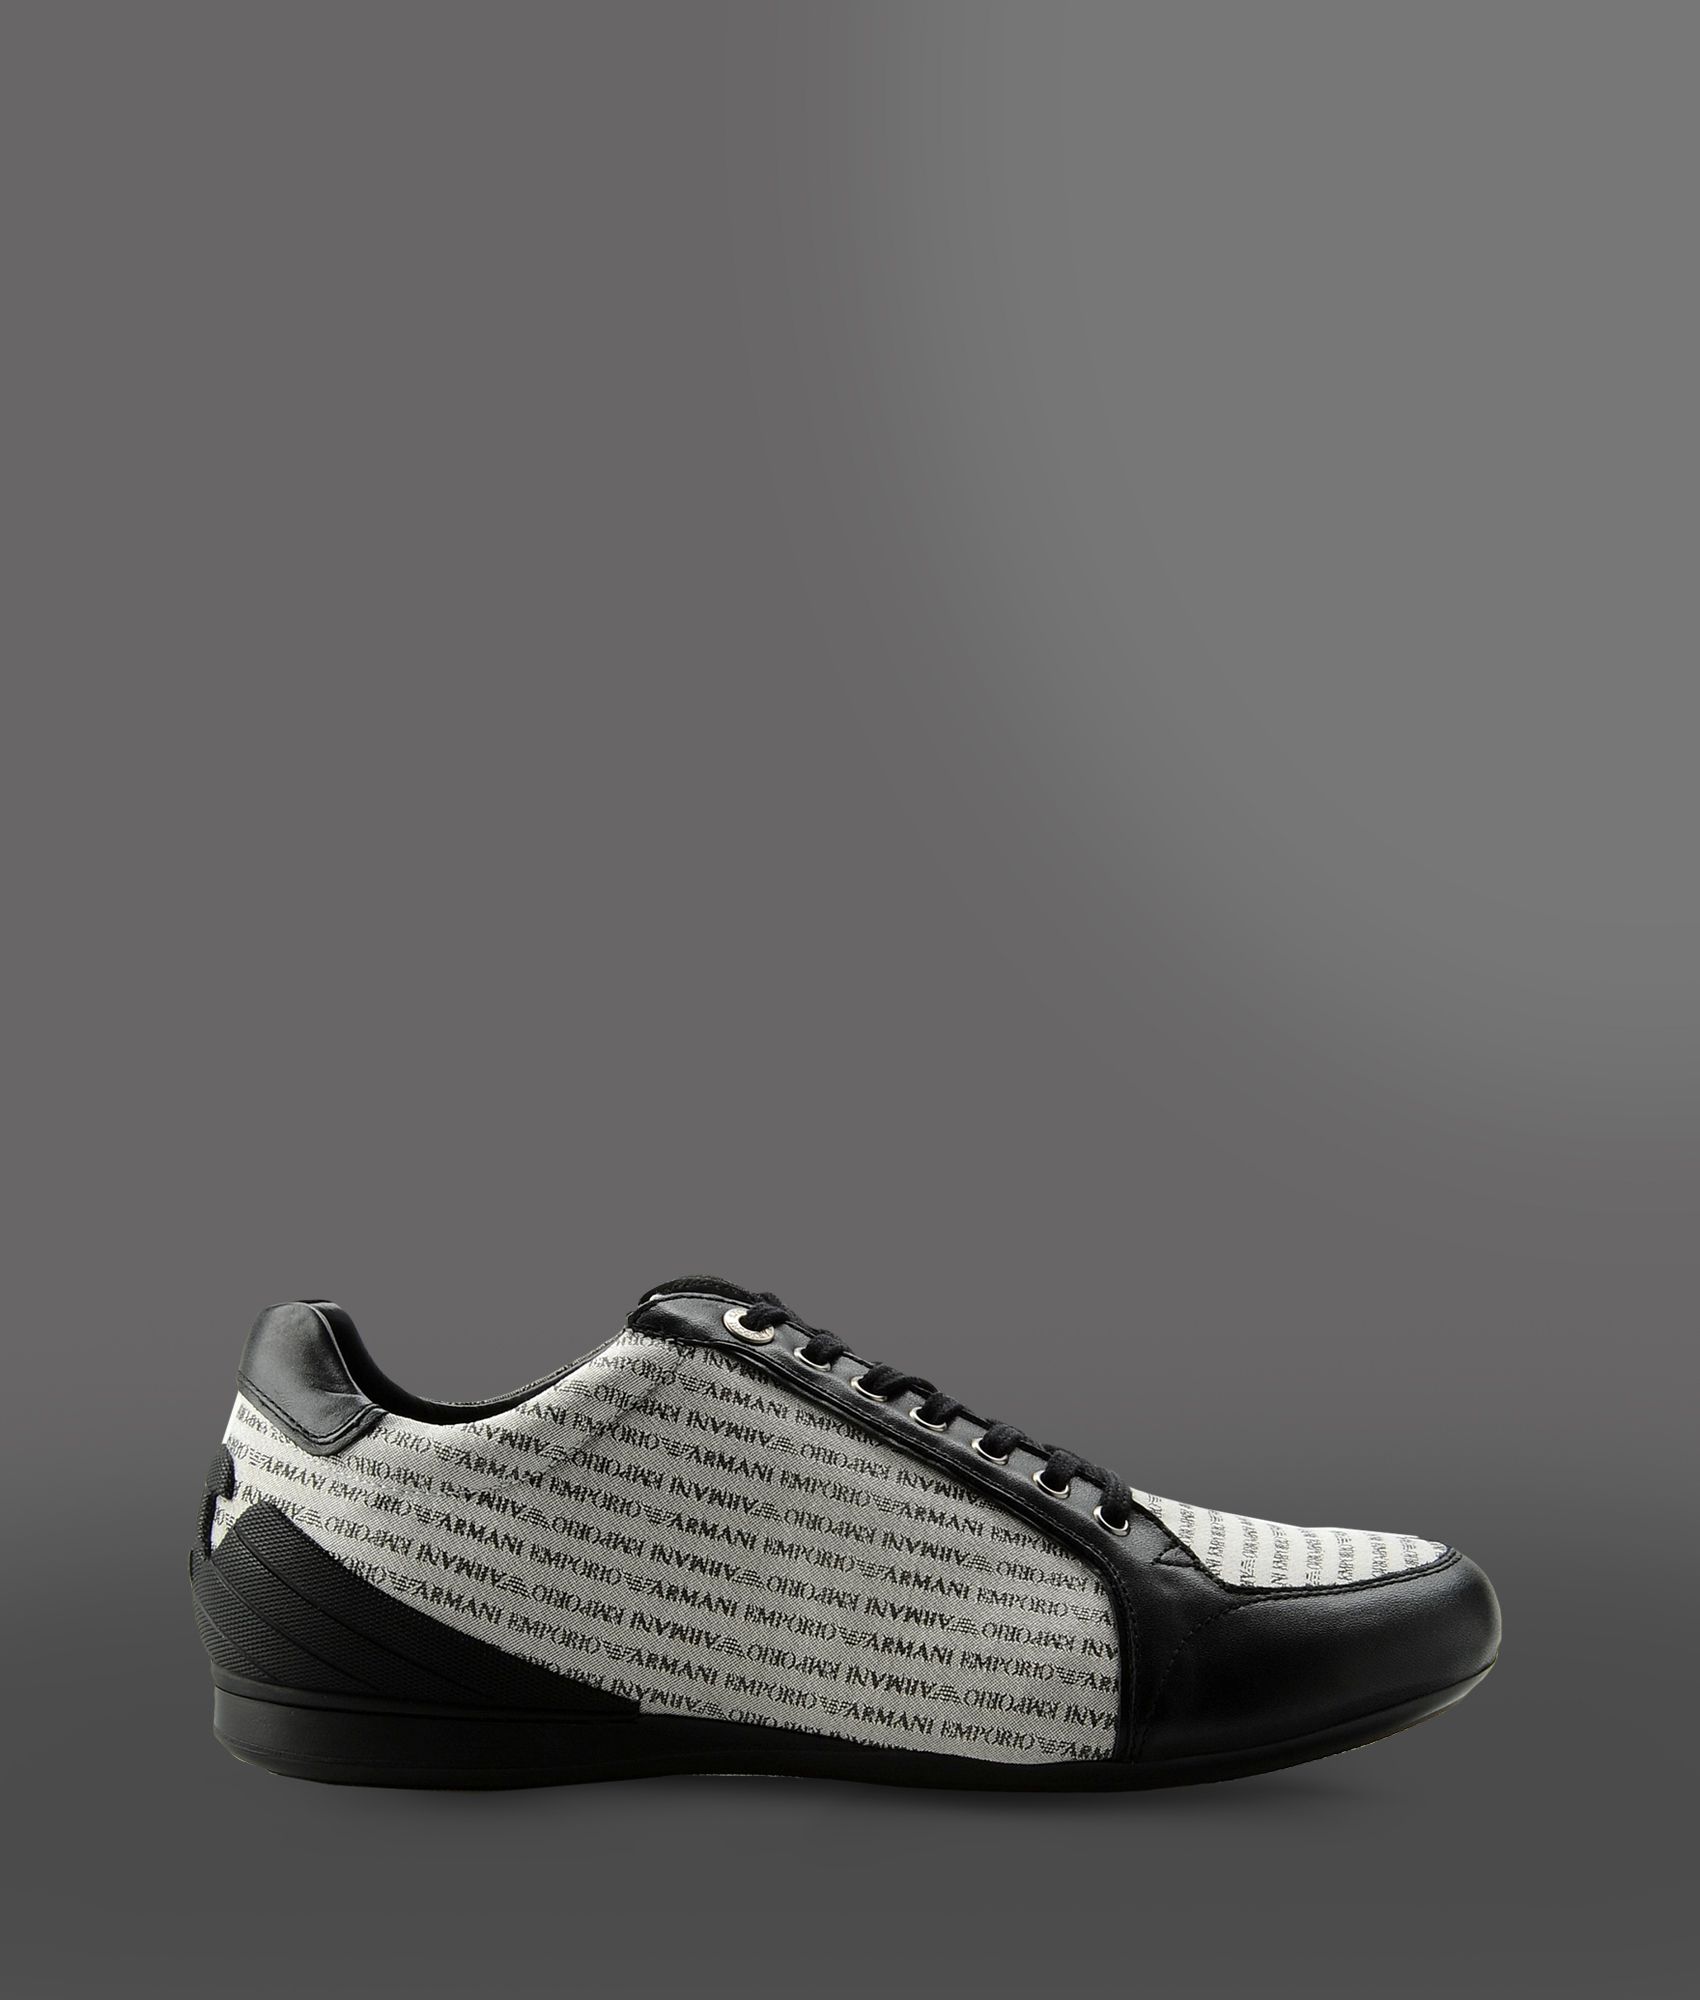 Lyst - Emporio Armani Sneakers in Black for Men